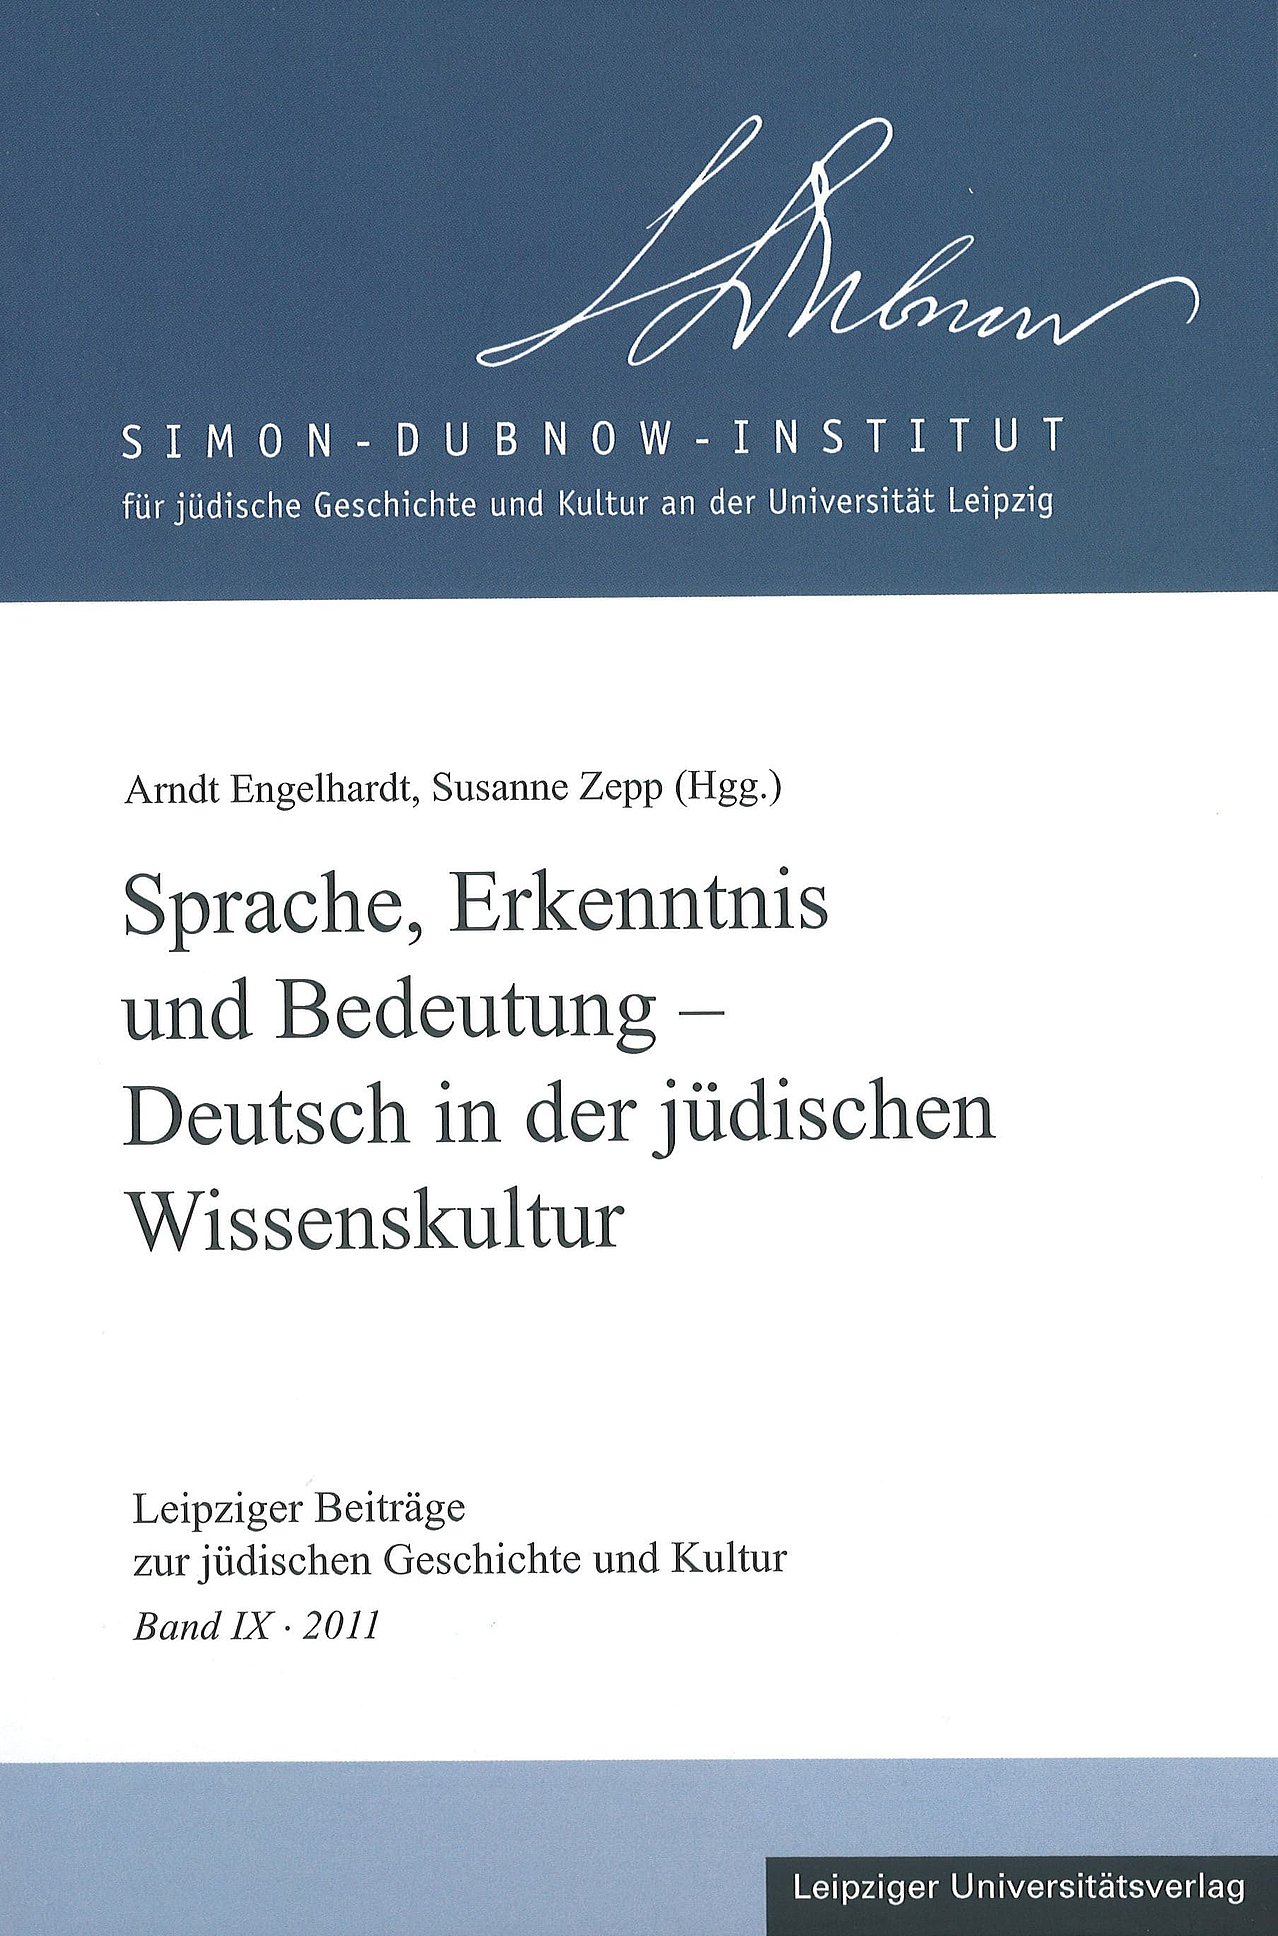 Leipziger Beiträge, Sprache, Erkenntnis und Bedeutung, 2011